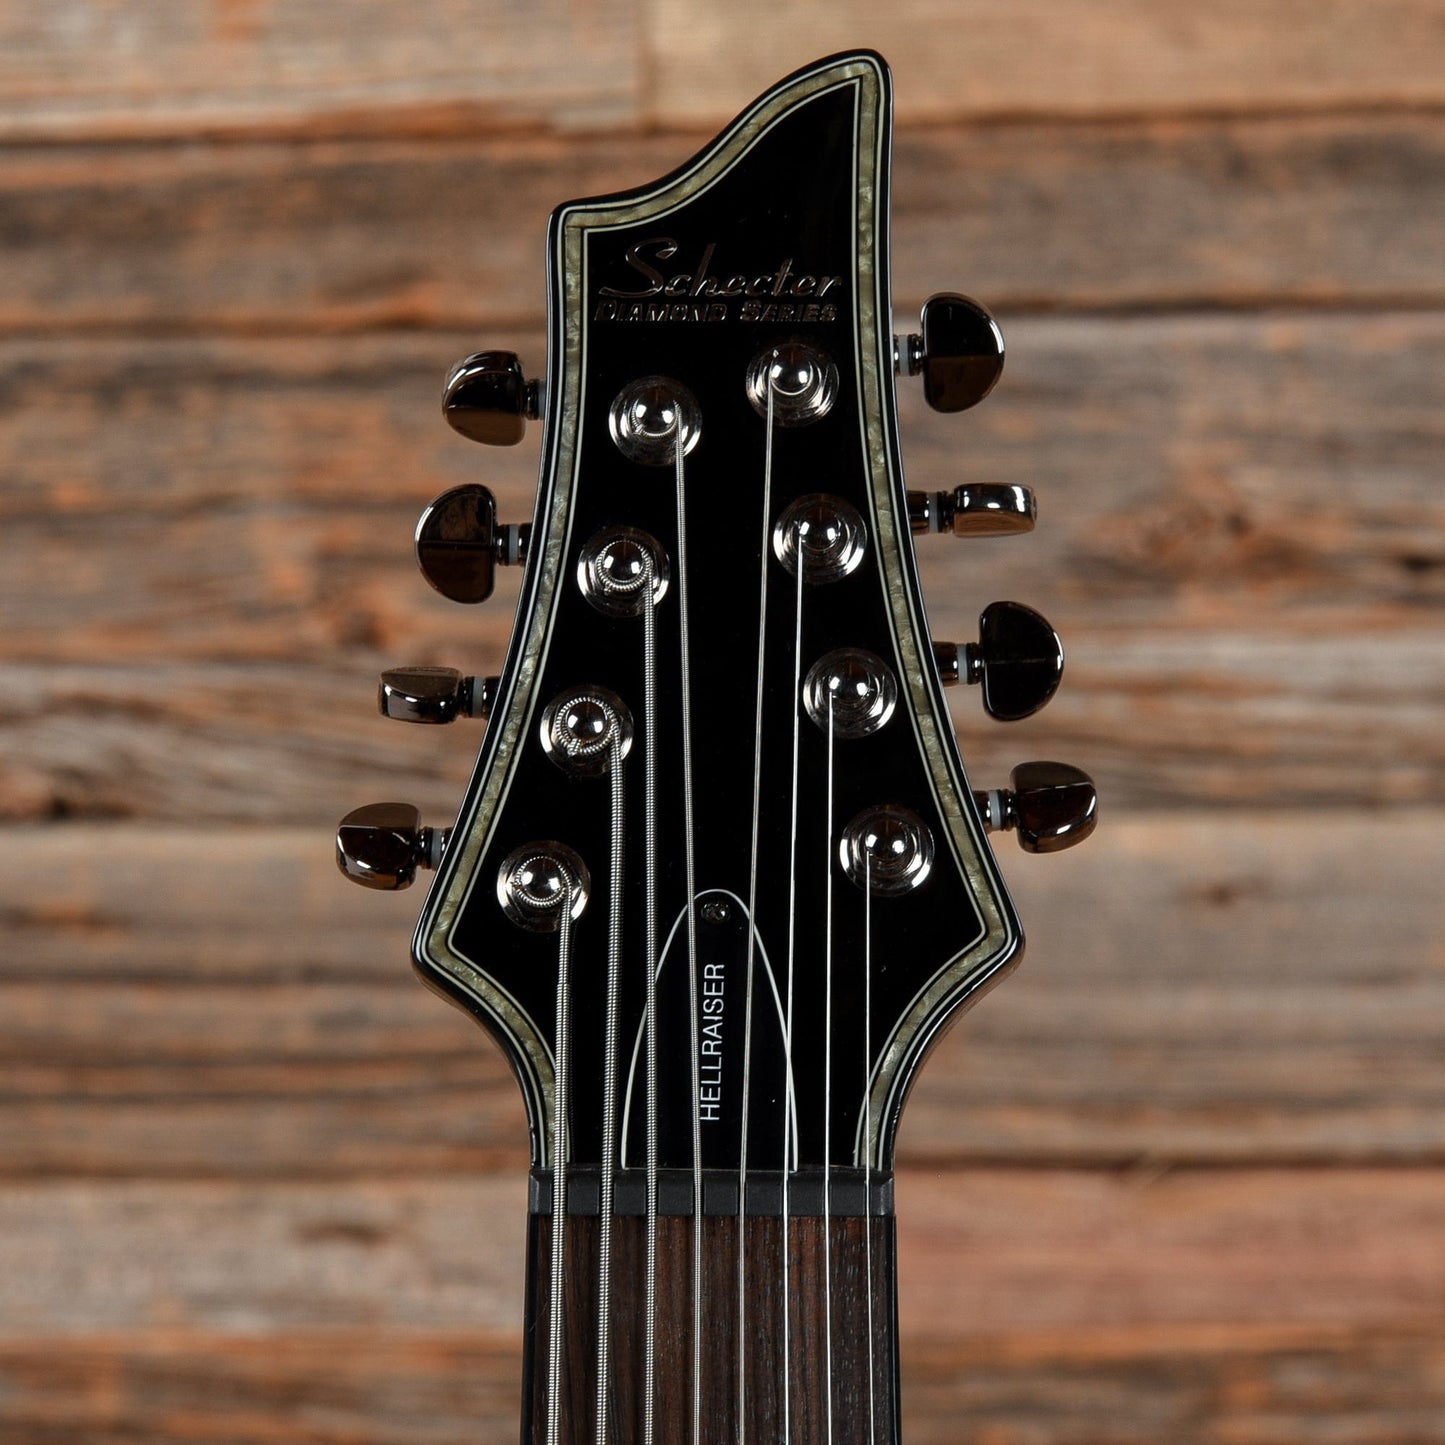 Schecter Hellraiser C-8 Black 2012 Electric Guitars / Solid Body